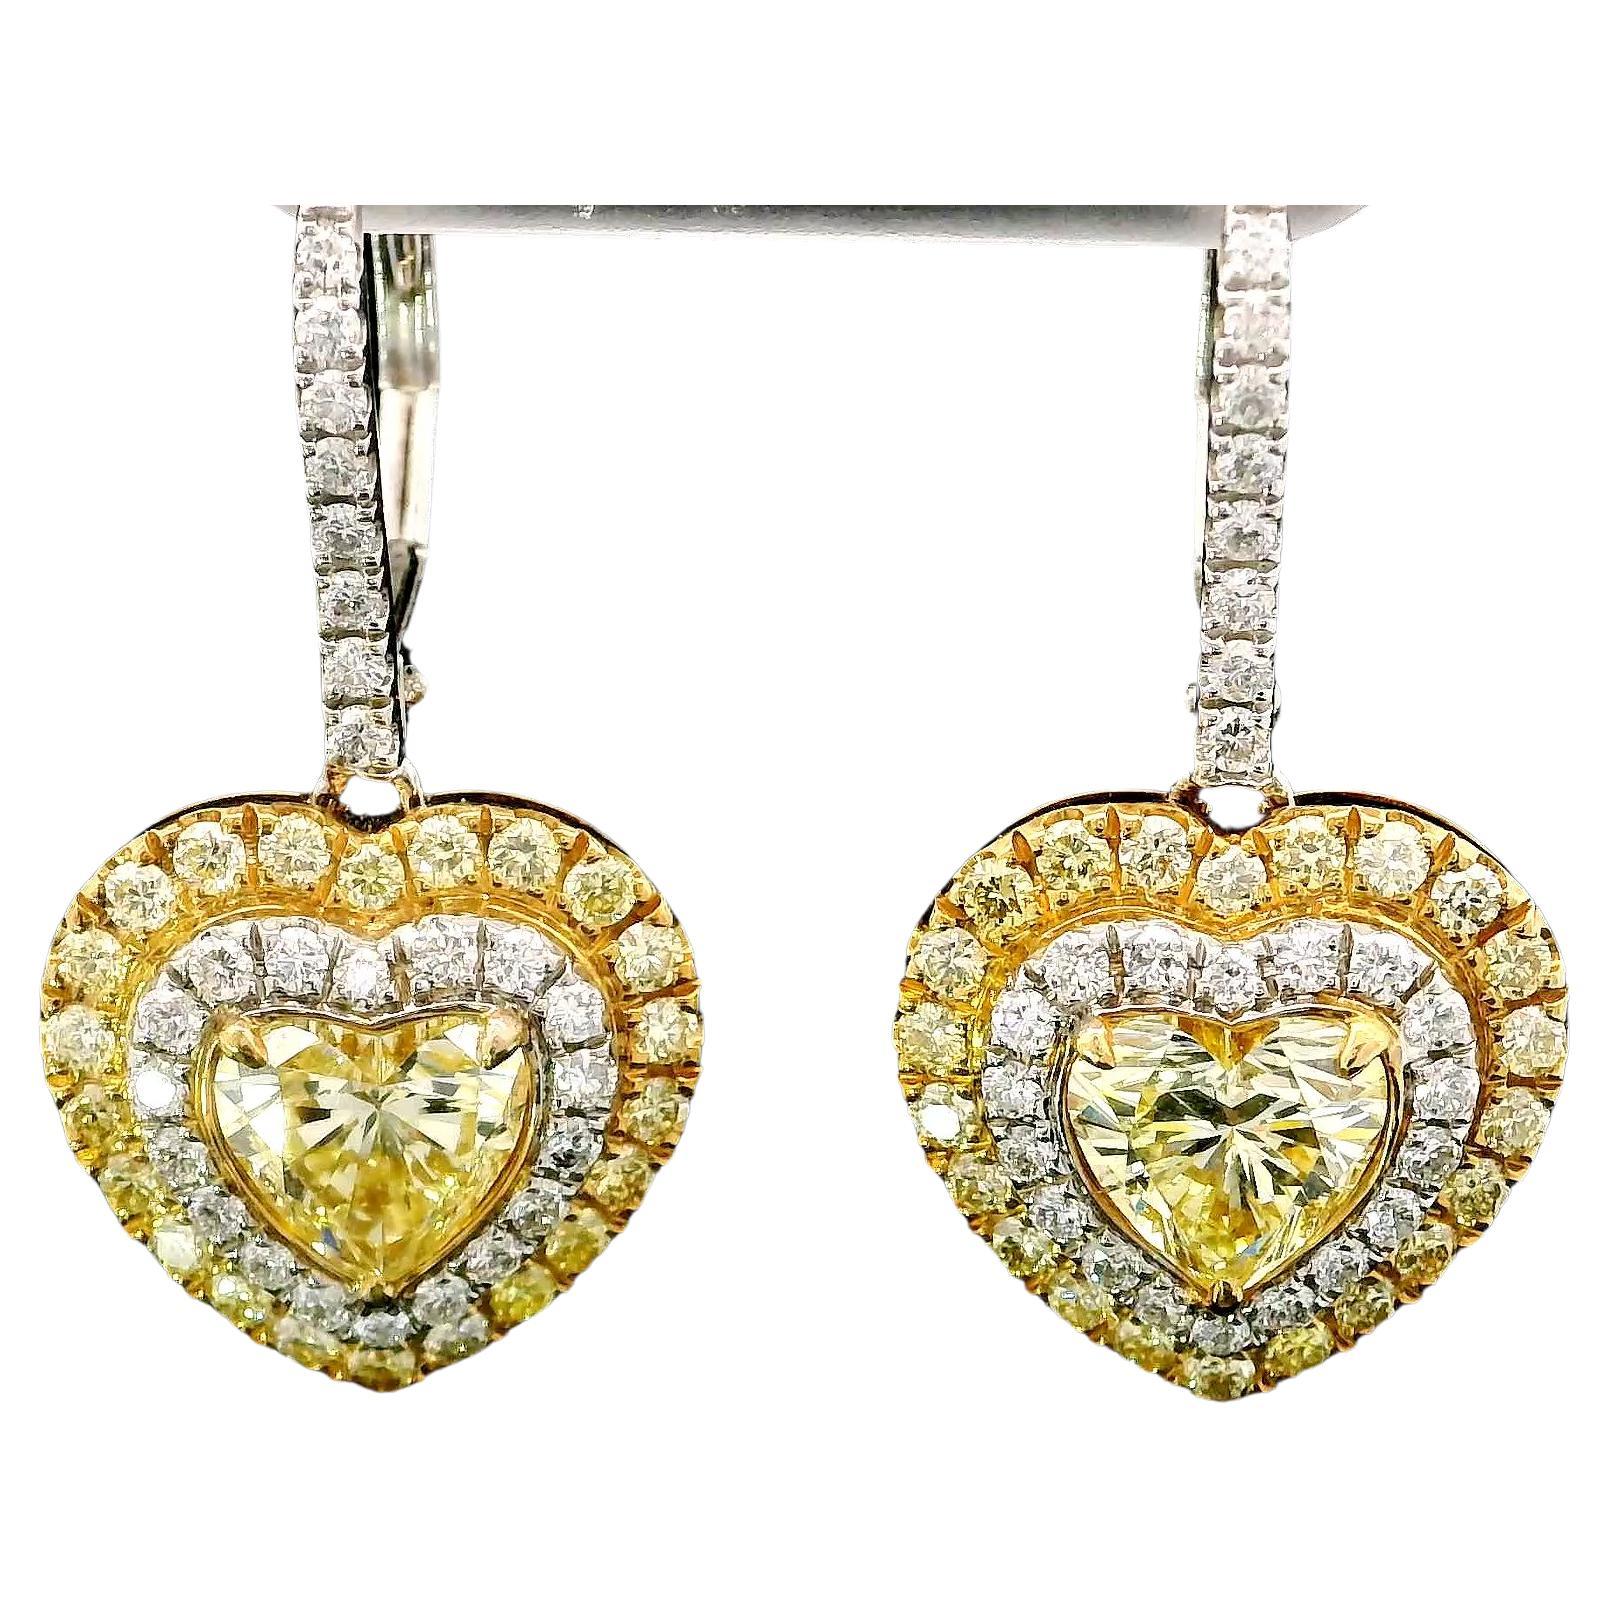 1.66 Carat Fancy Yellow Diamond Earrings GIA Certified For Sale